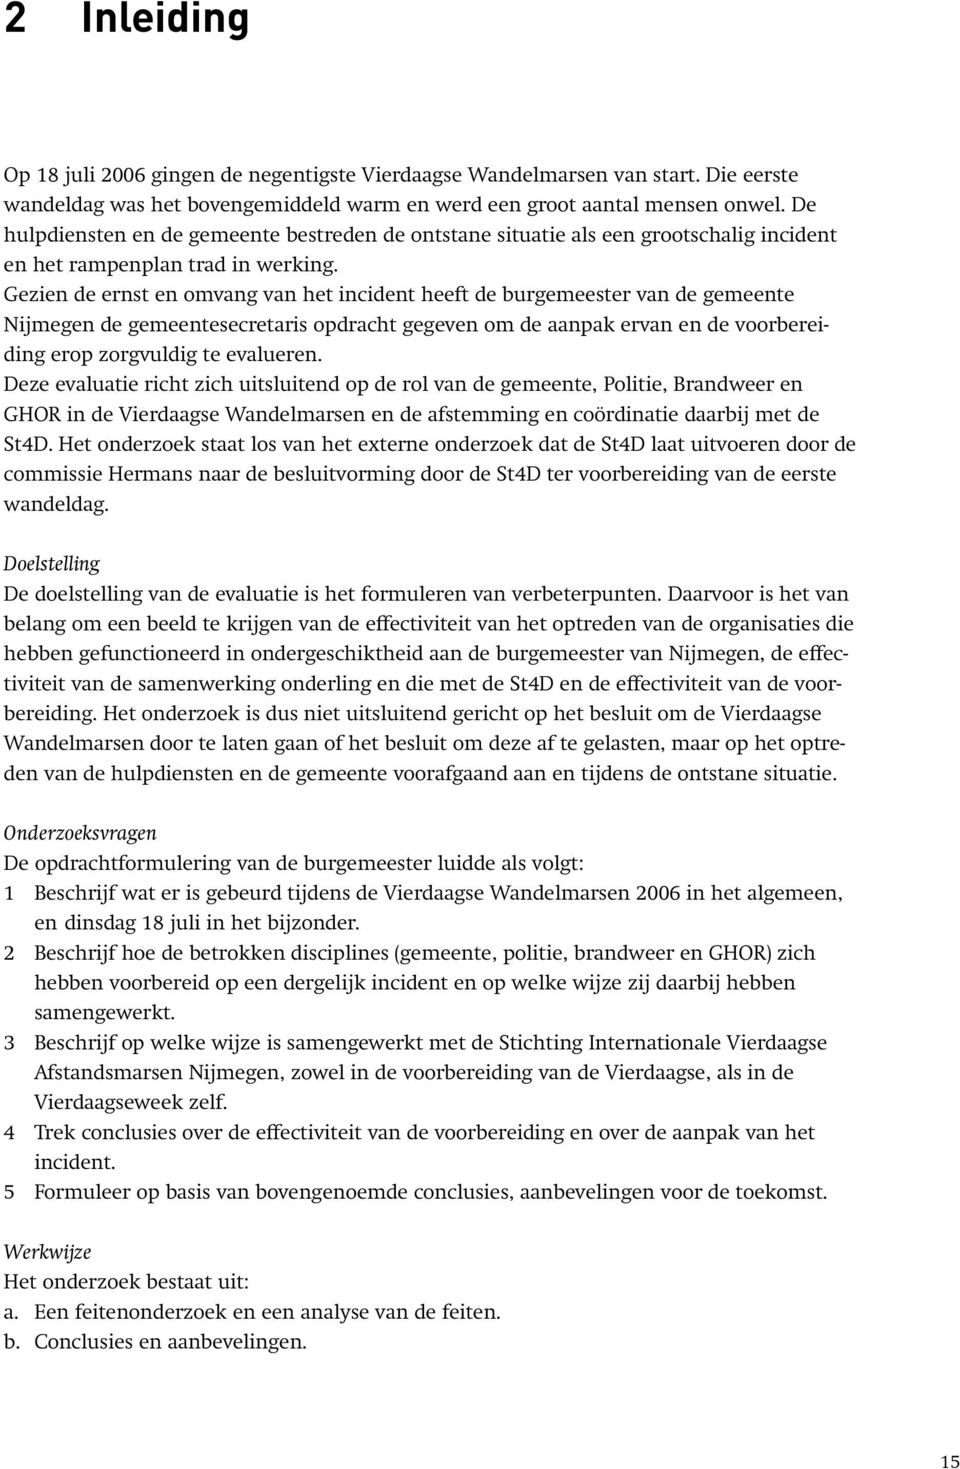 Gezien de ernst en omvang van het incident heeft de burgemeester van de gemeente Nijmegen de gemeentesecretaris opdracht gegeven om de aanpak ervan en de voorbereiding erop zorgvuldig te evalueren.